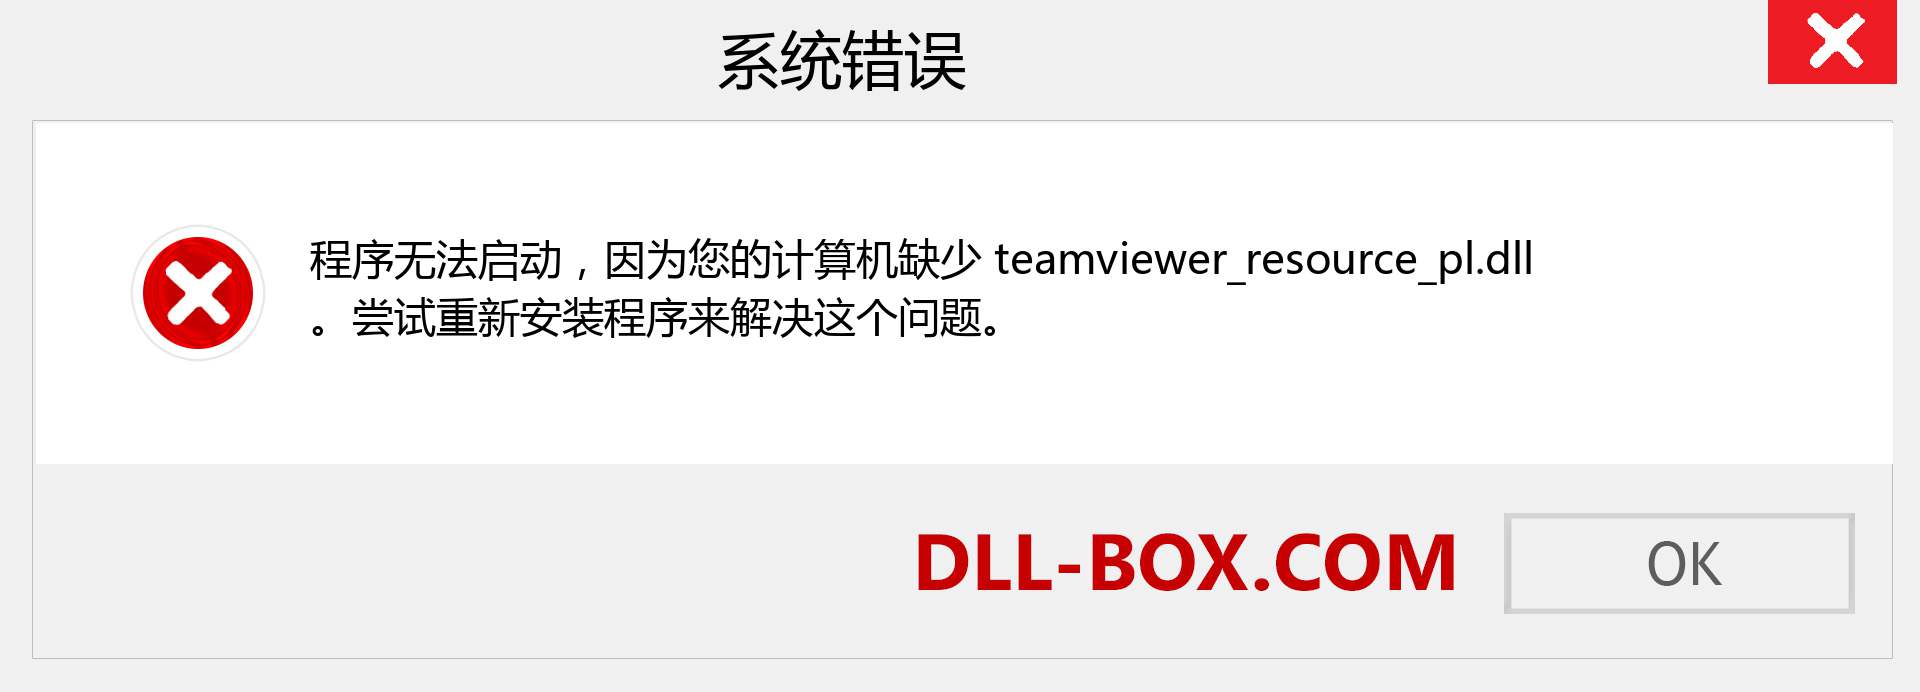 teamviewer_resource_pl.dll 文件丢失？。 适用于 Windows 7、8、10 的下载 - 修复 Windows、照片、图像上的 teamviewer_resource_pl dll 丢失错误